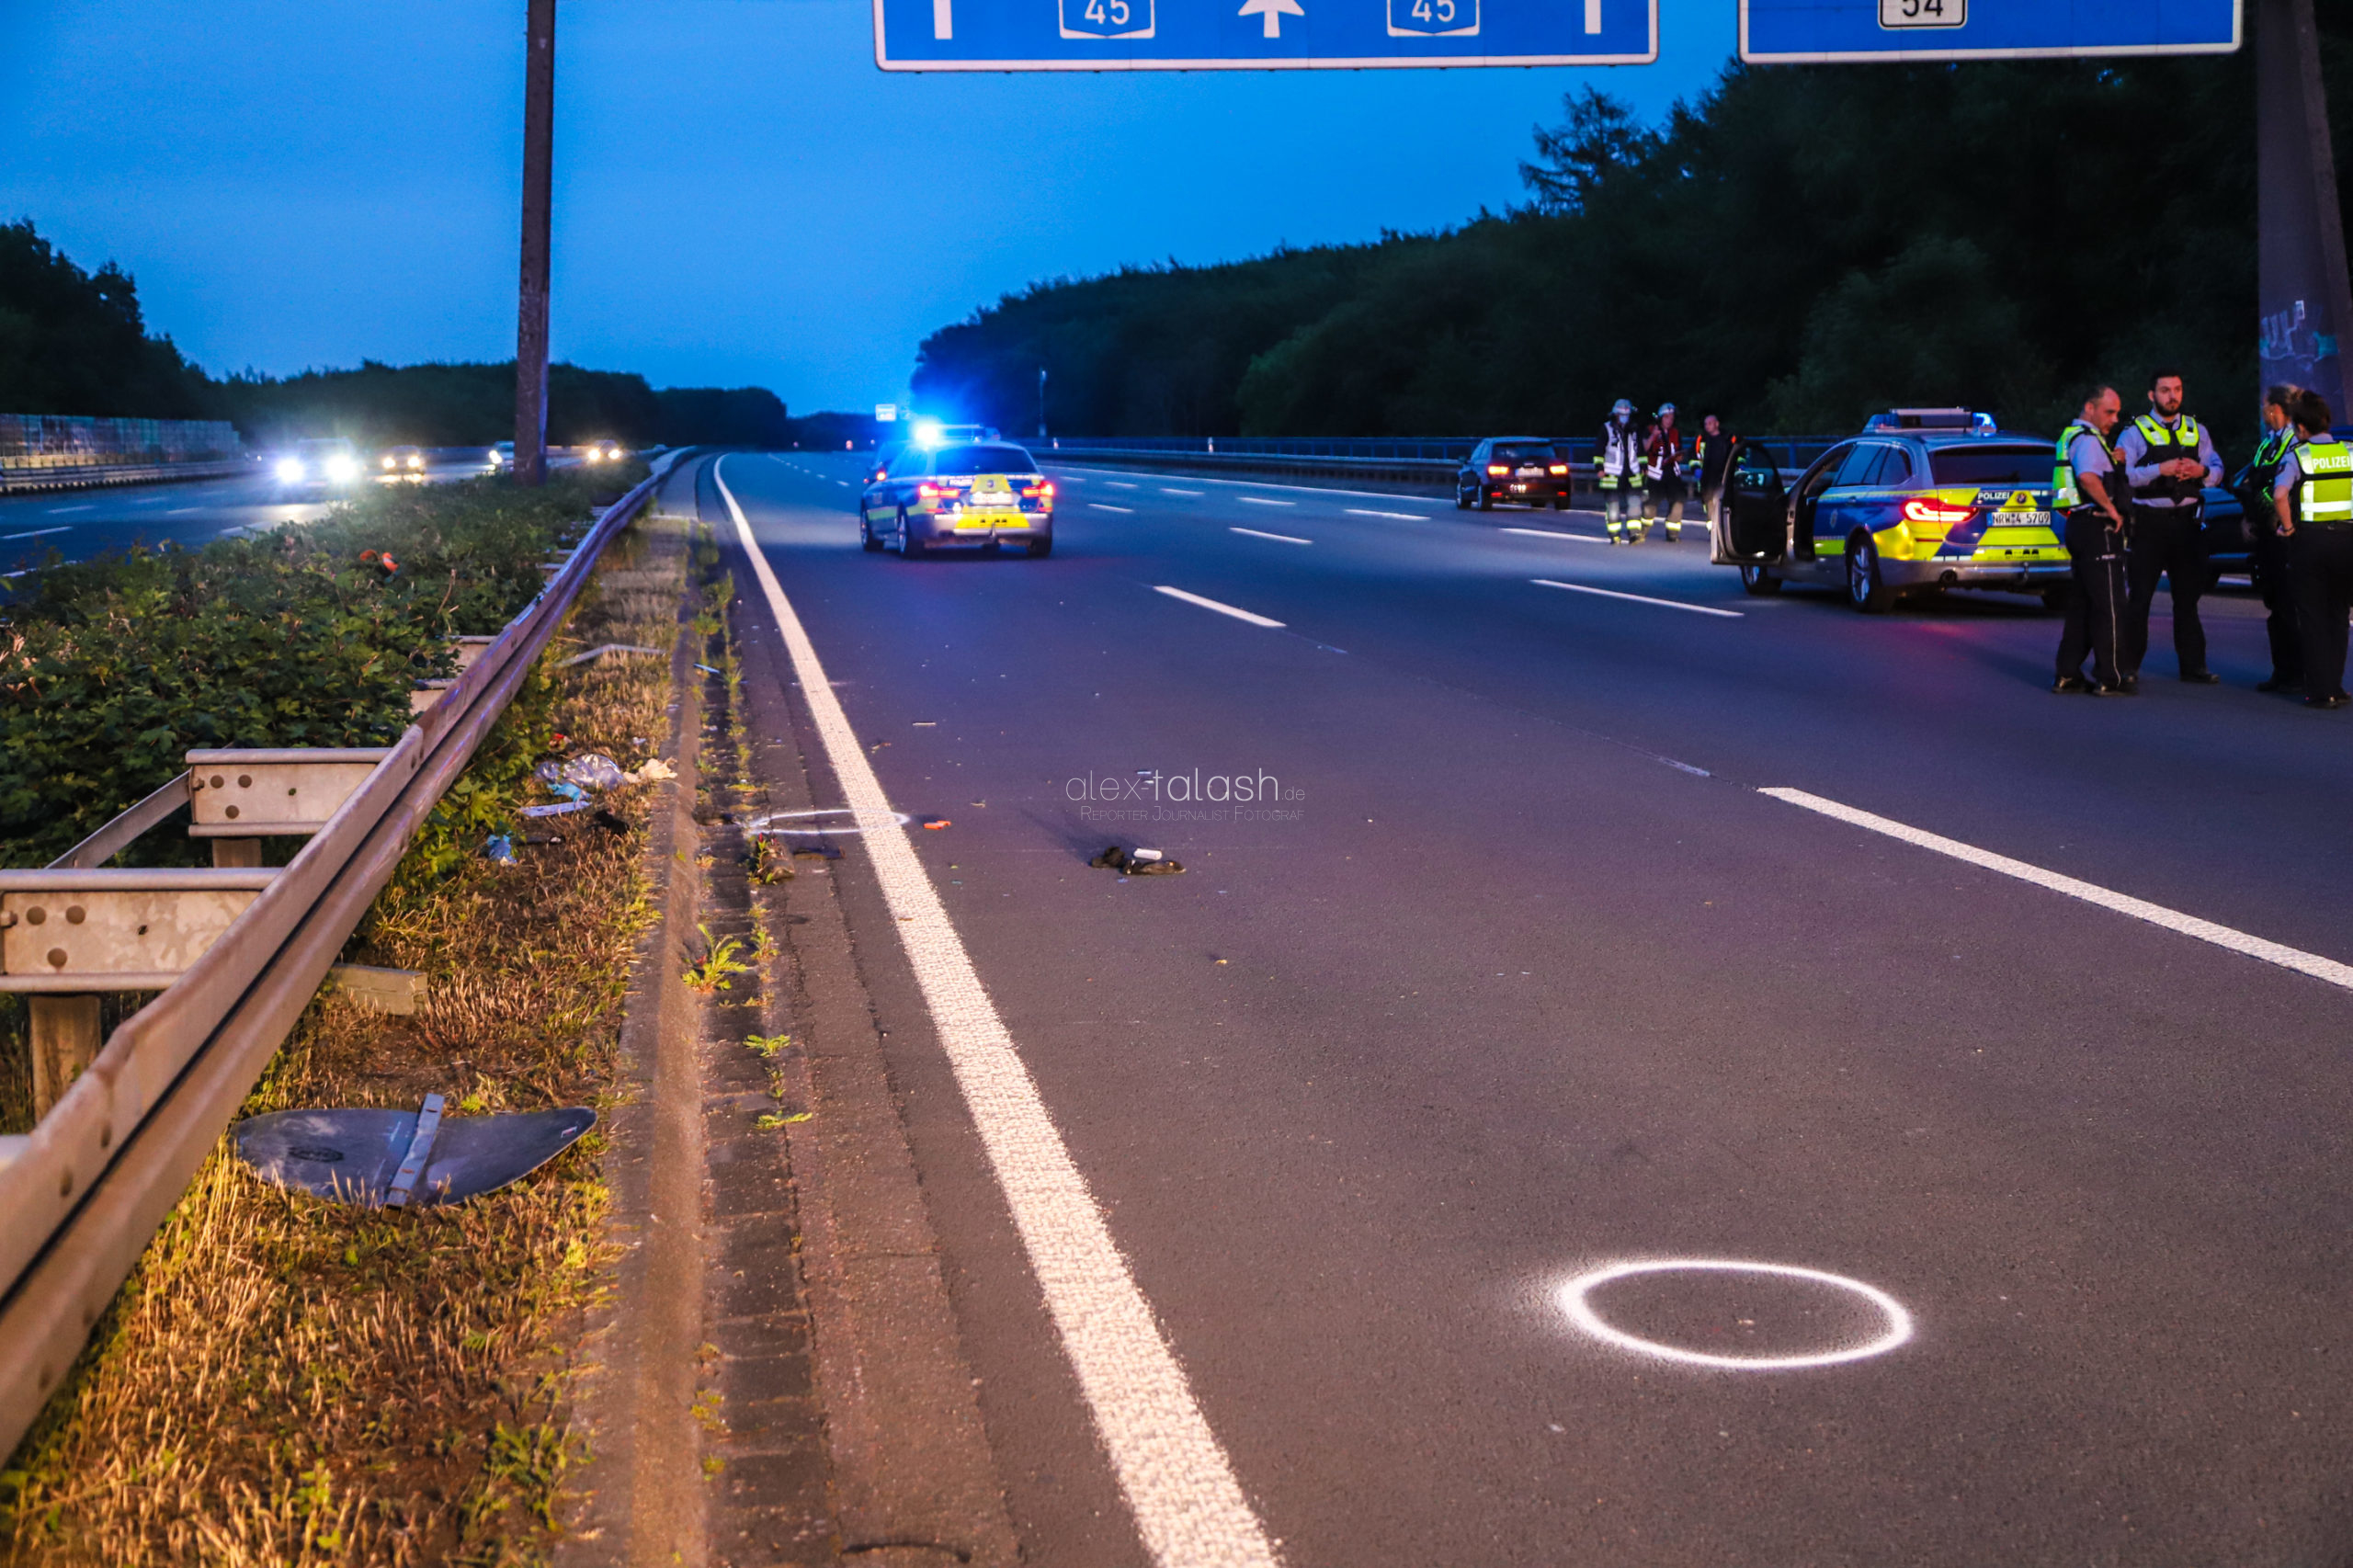 Arbeiter auf A45 bei Dortmund von Auto erfasst: Lebensgefahr